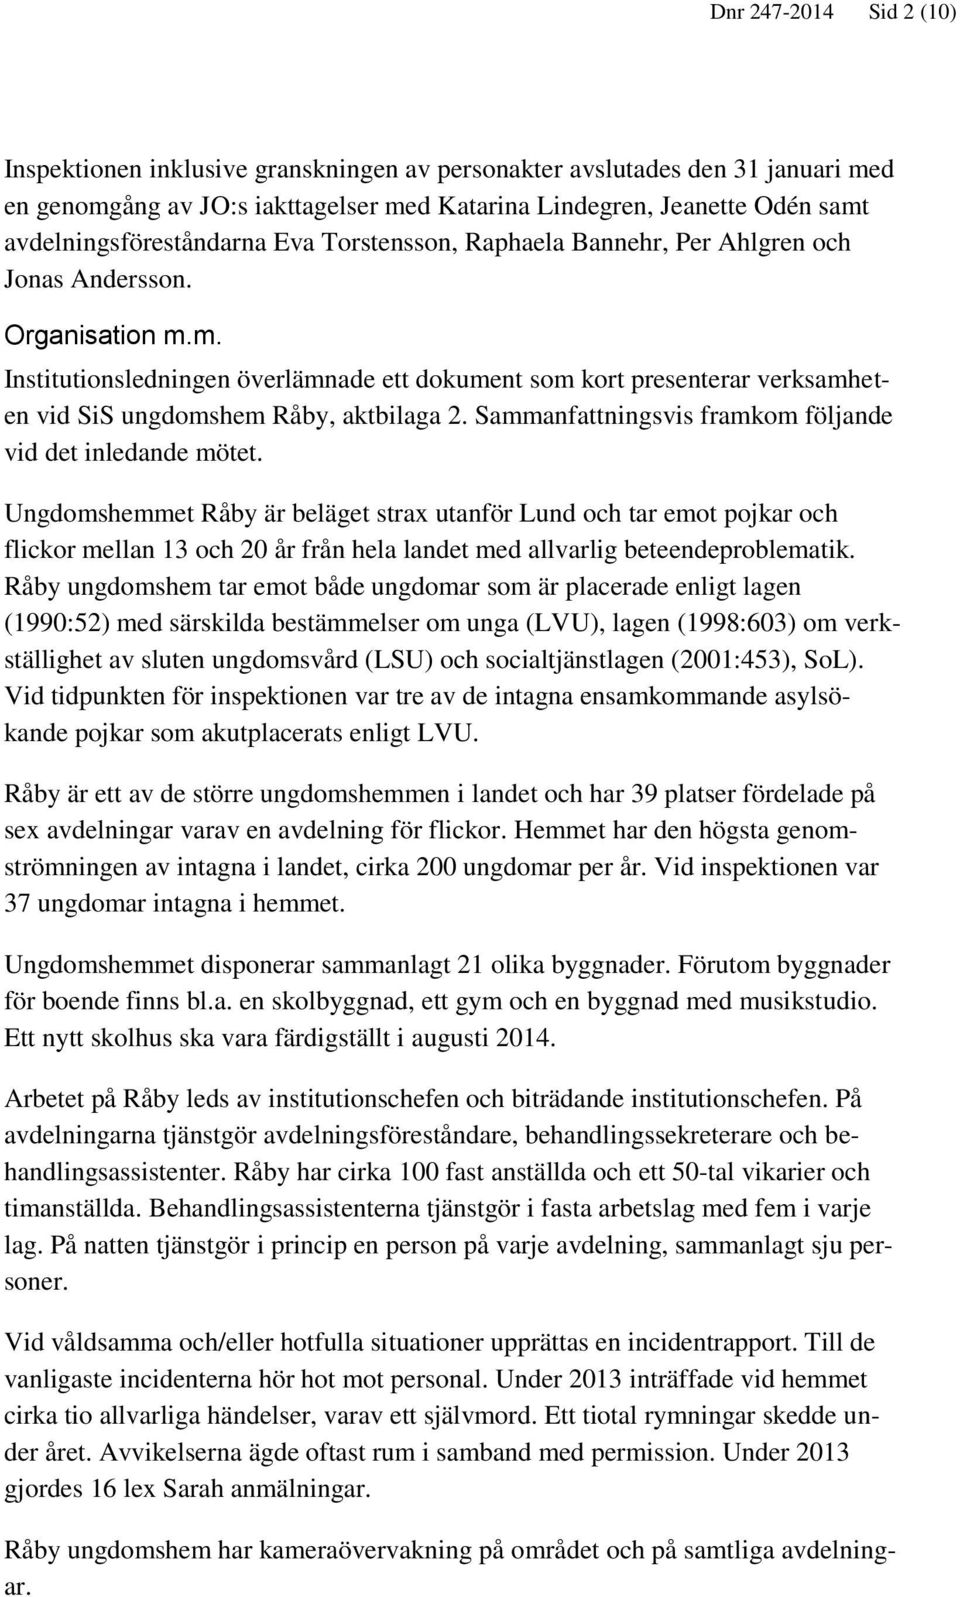 m. Institutionsledningen överlämnade ett dokument som kort presenterar verksamheten vid SiS ungdomshem Råby, aktbilaga 2. Sammanfattningsvis framkom följande vid det inledande mötet.